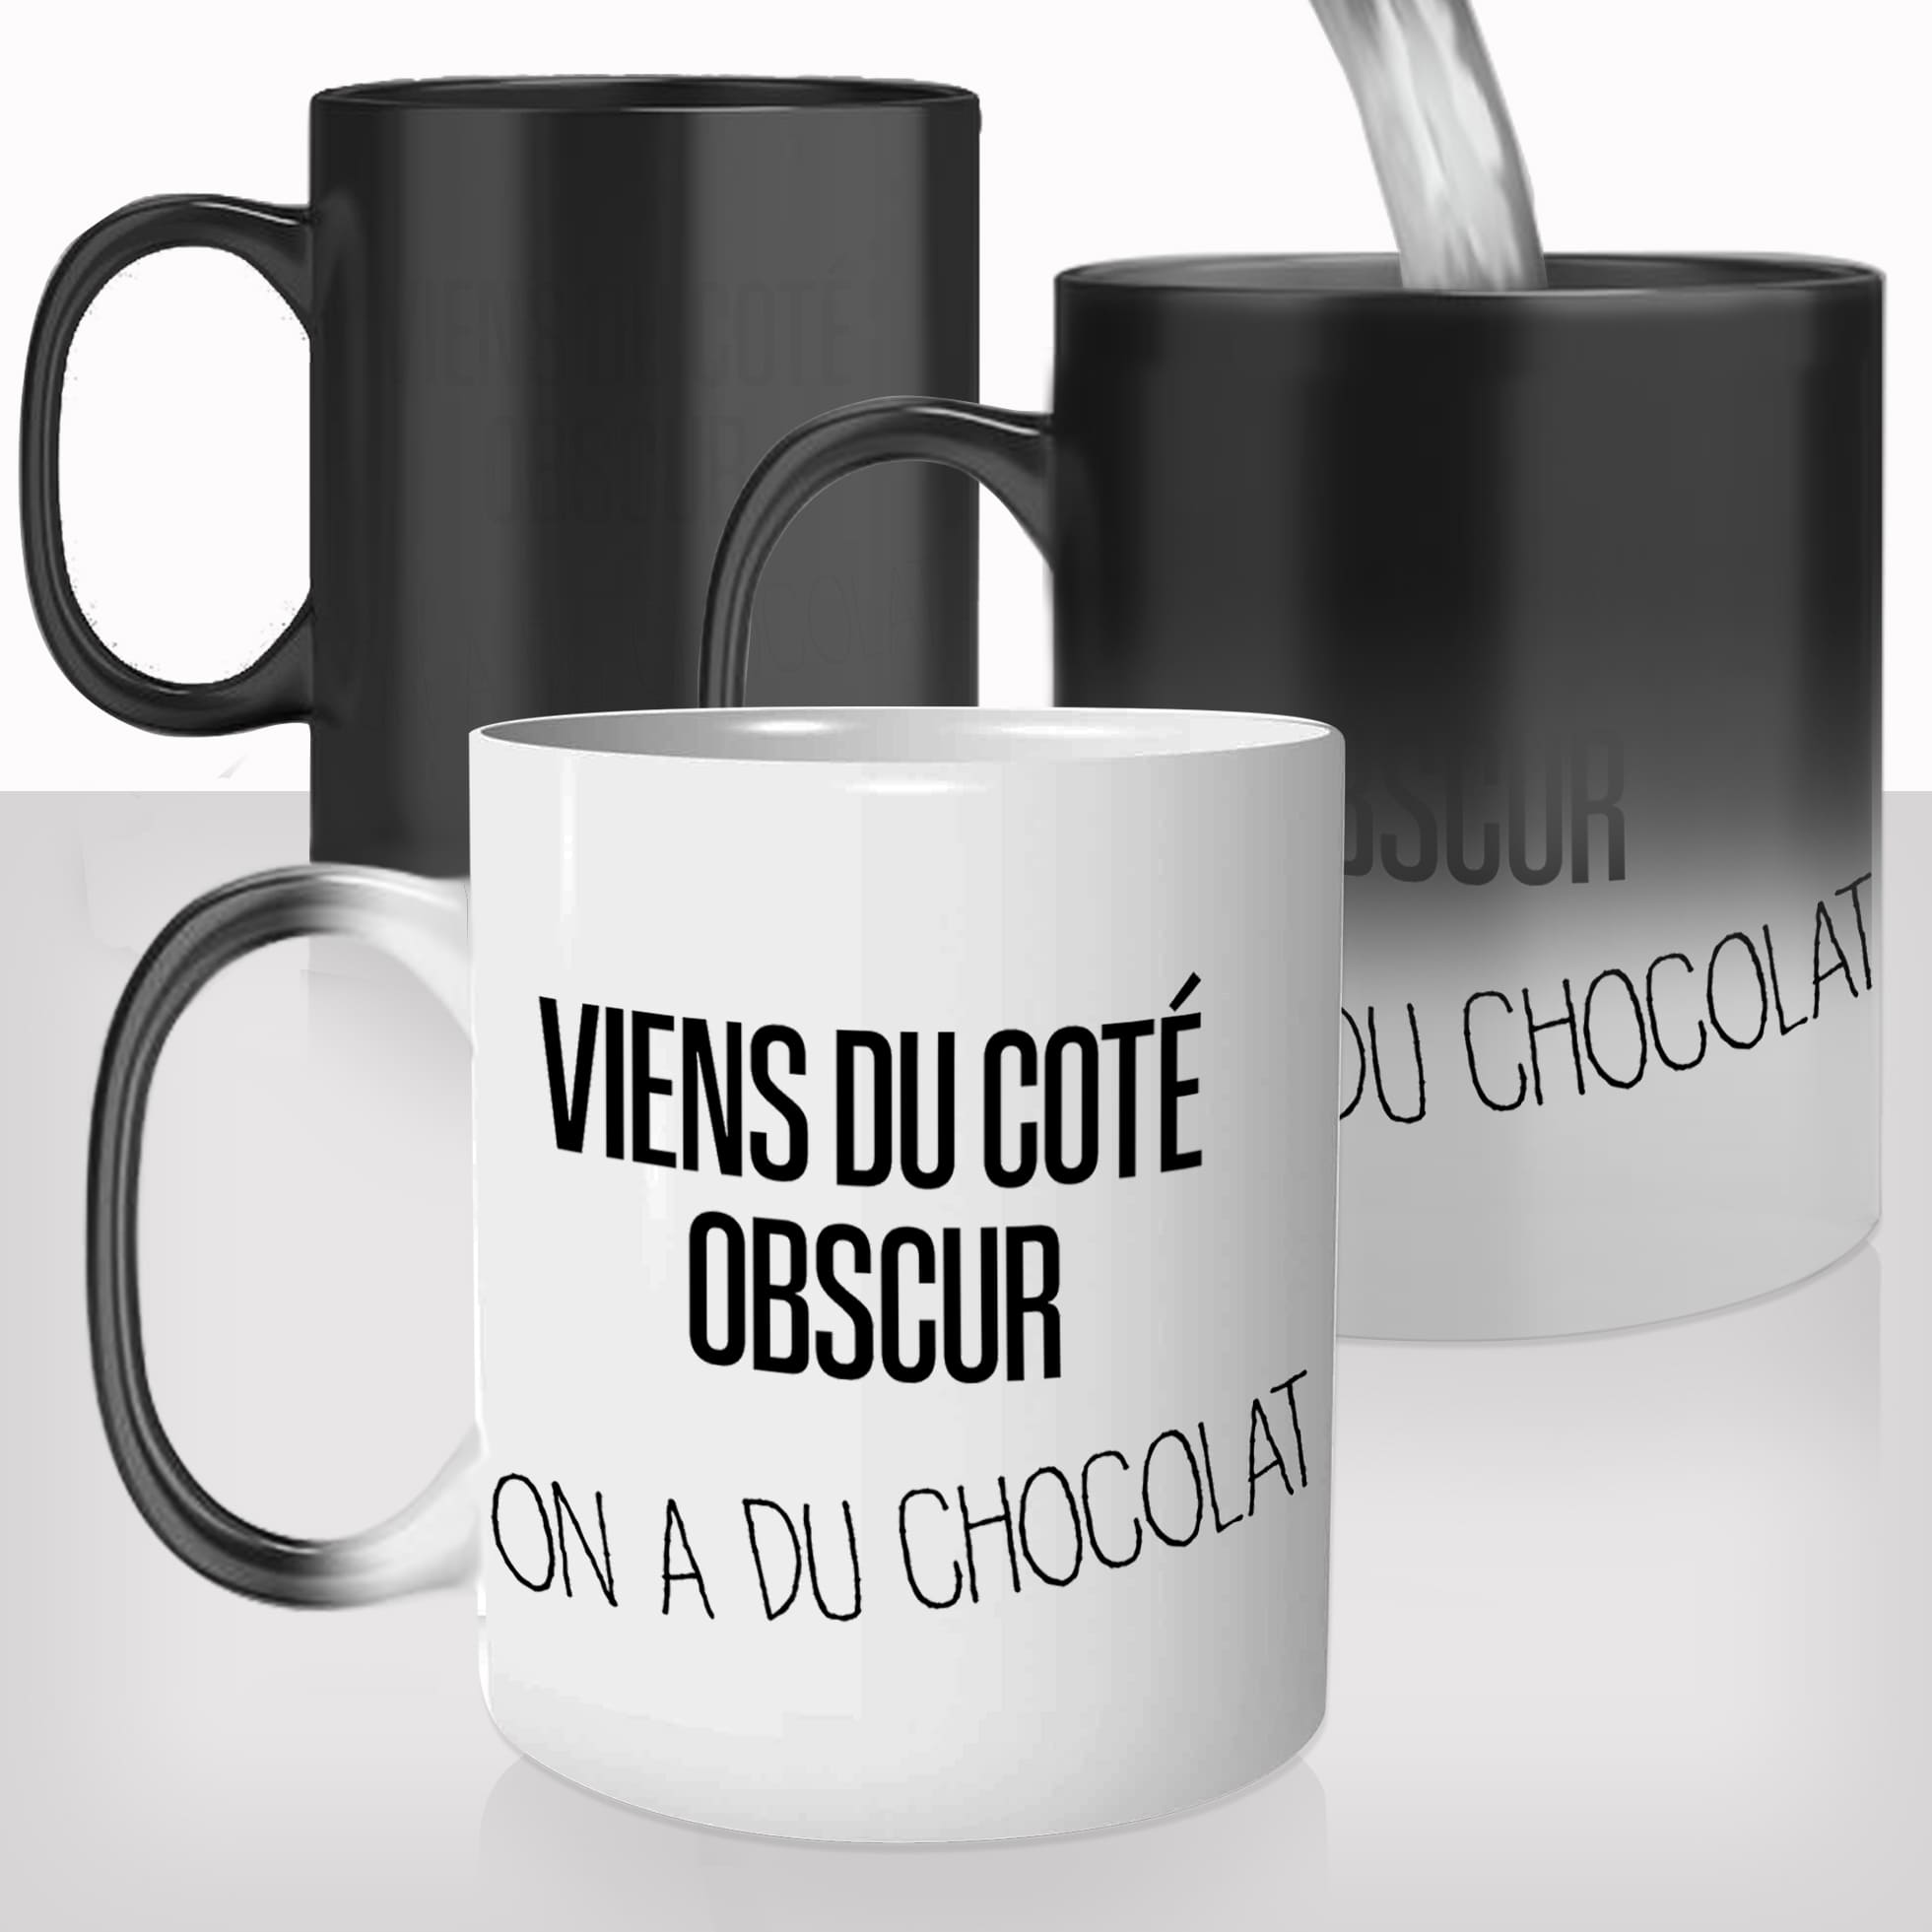 mug-magique-personnalisé-tasse-thermo-reactif-thermique-viens-du-coté-obscur-on-a-du-chocolat-dark-side-prenom-personnalisable-cadeau